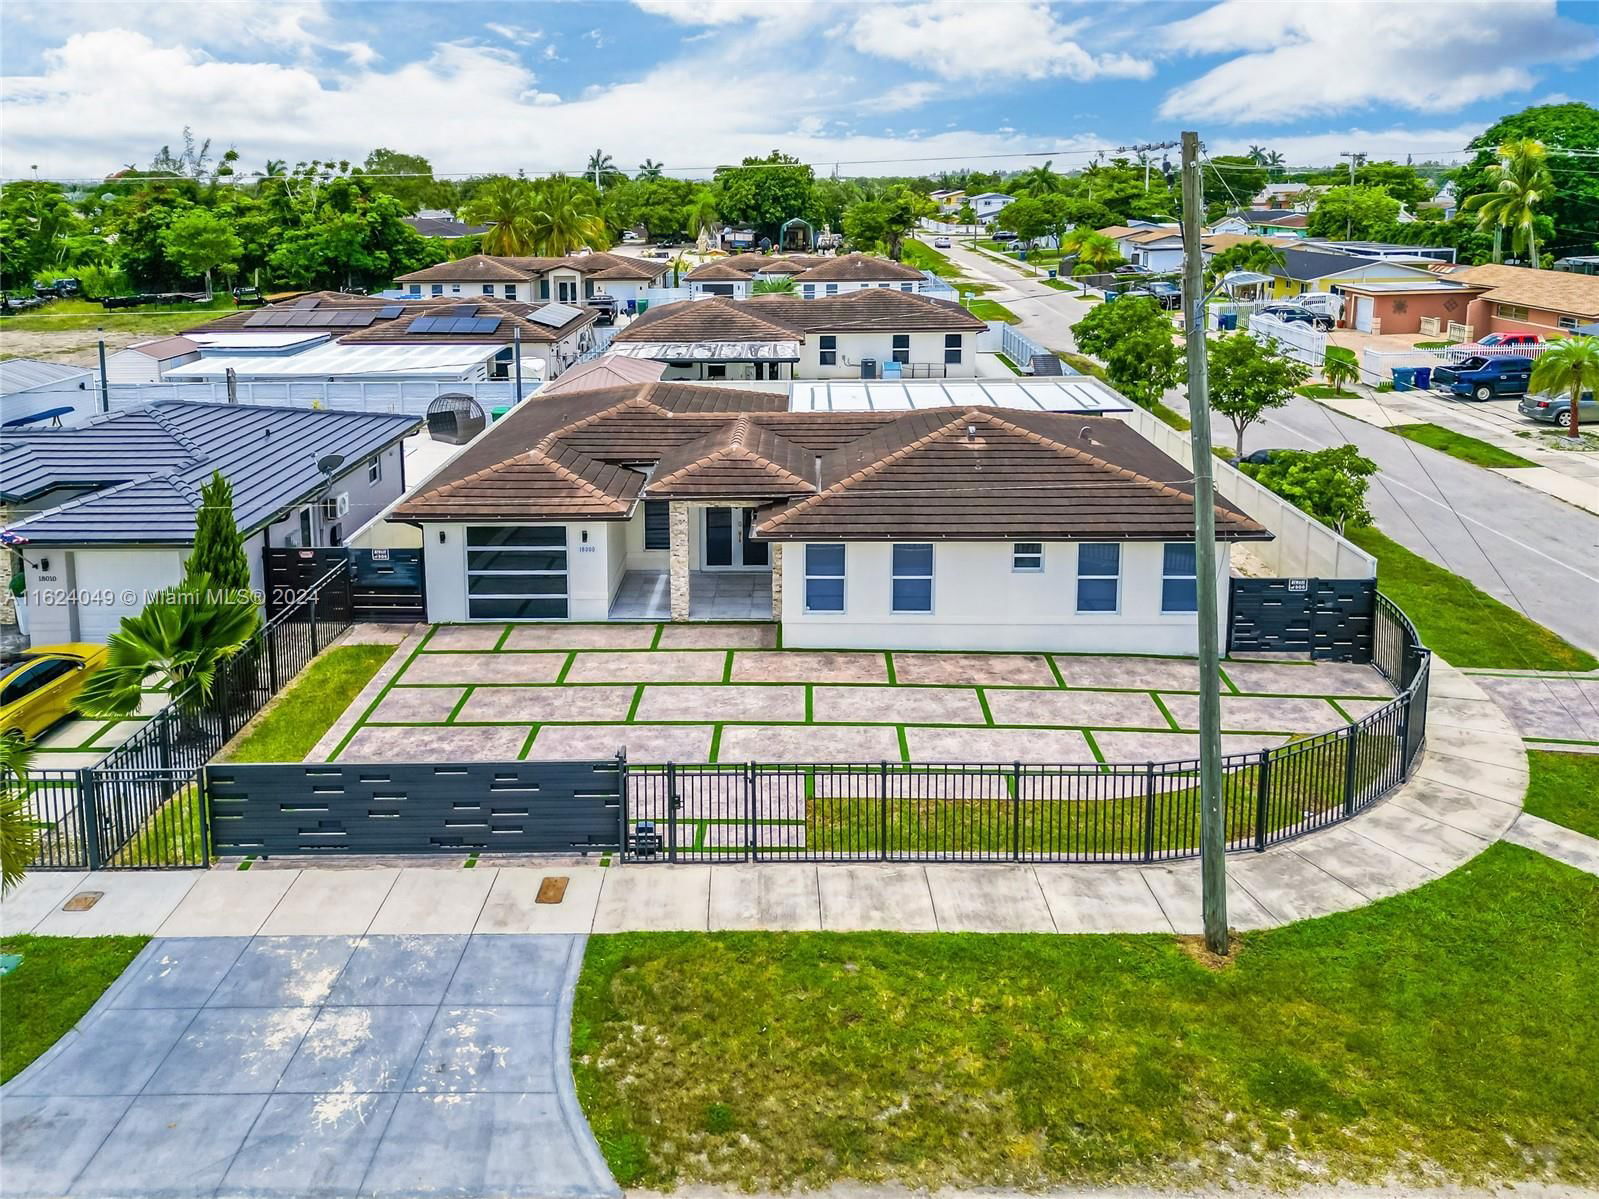 Real estate property located at 18000 110th Ave, Miami-Dade County, GLENDOLYN SUBDIVISION, Miami, FL